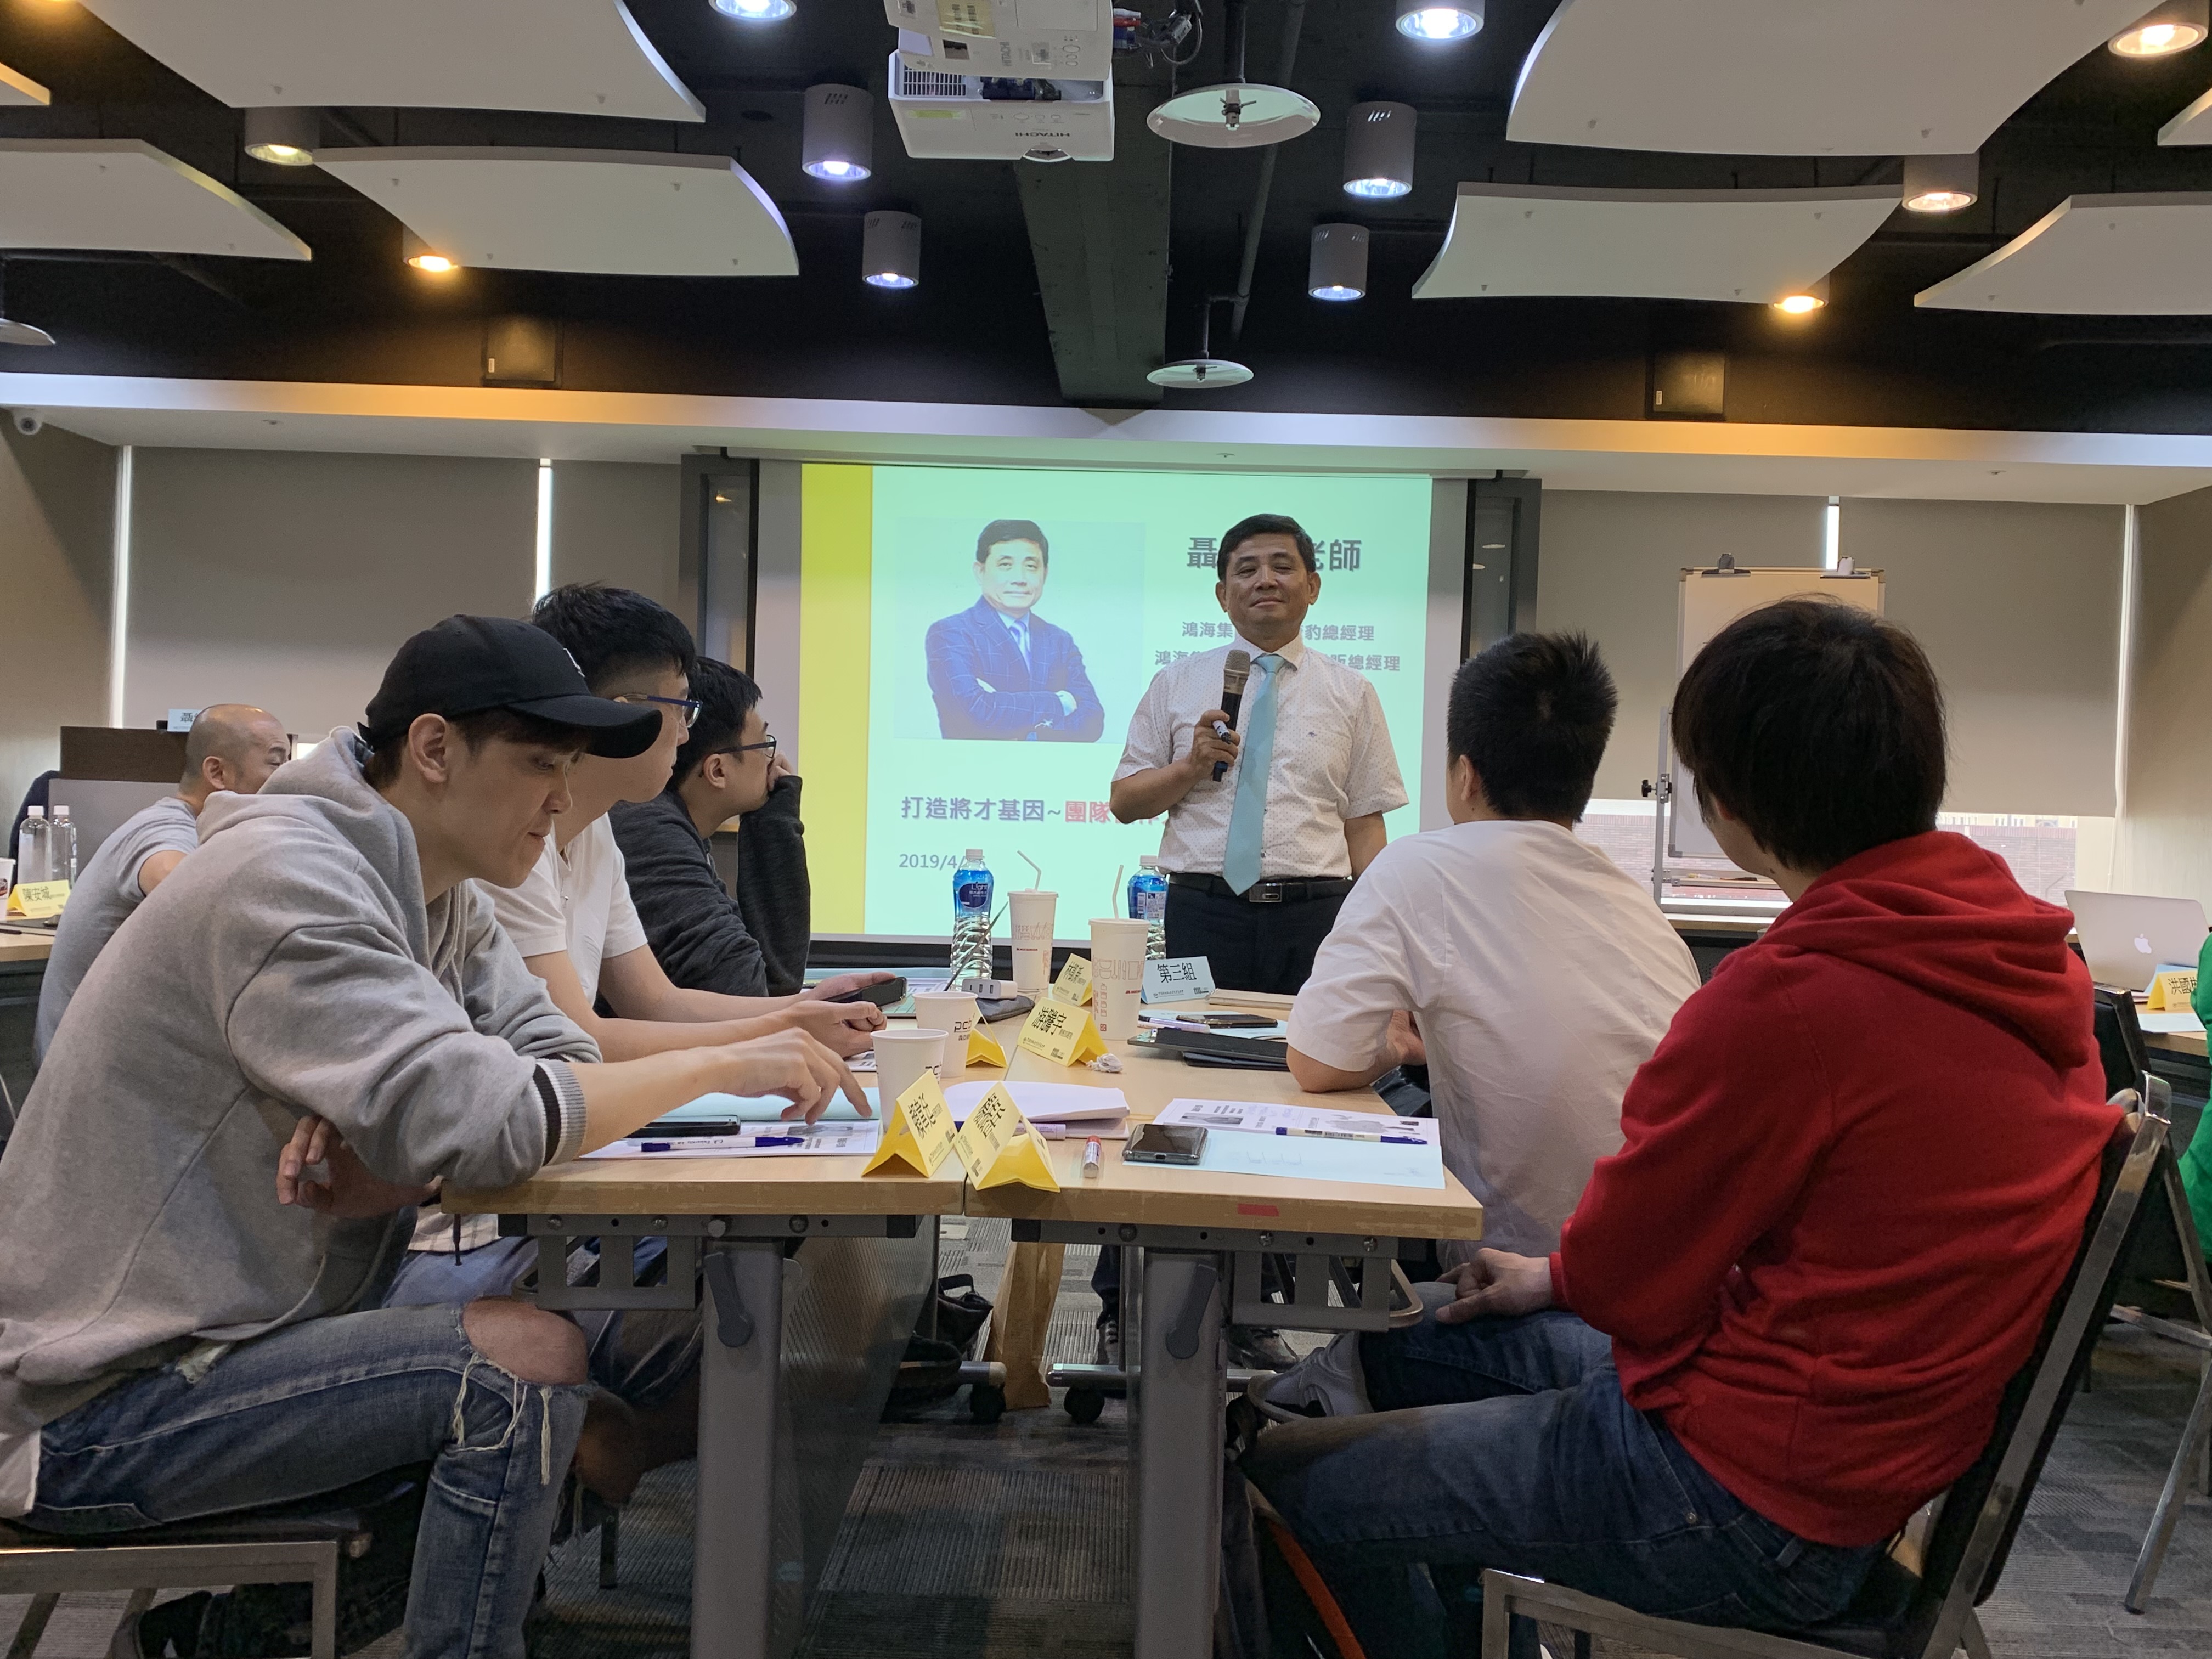 【企業內訓影片】香港商真好玩科技台灣分公司-目標管理與問題解決研習會